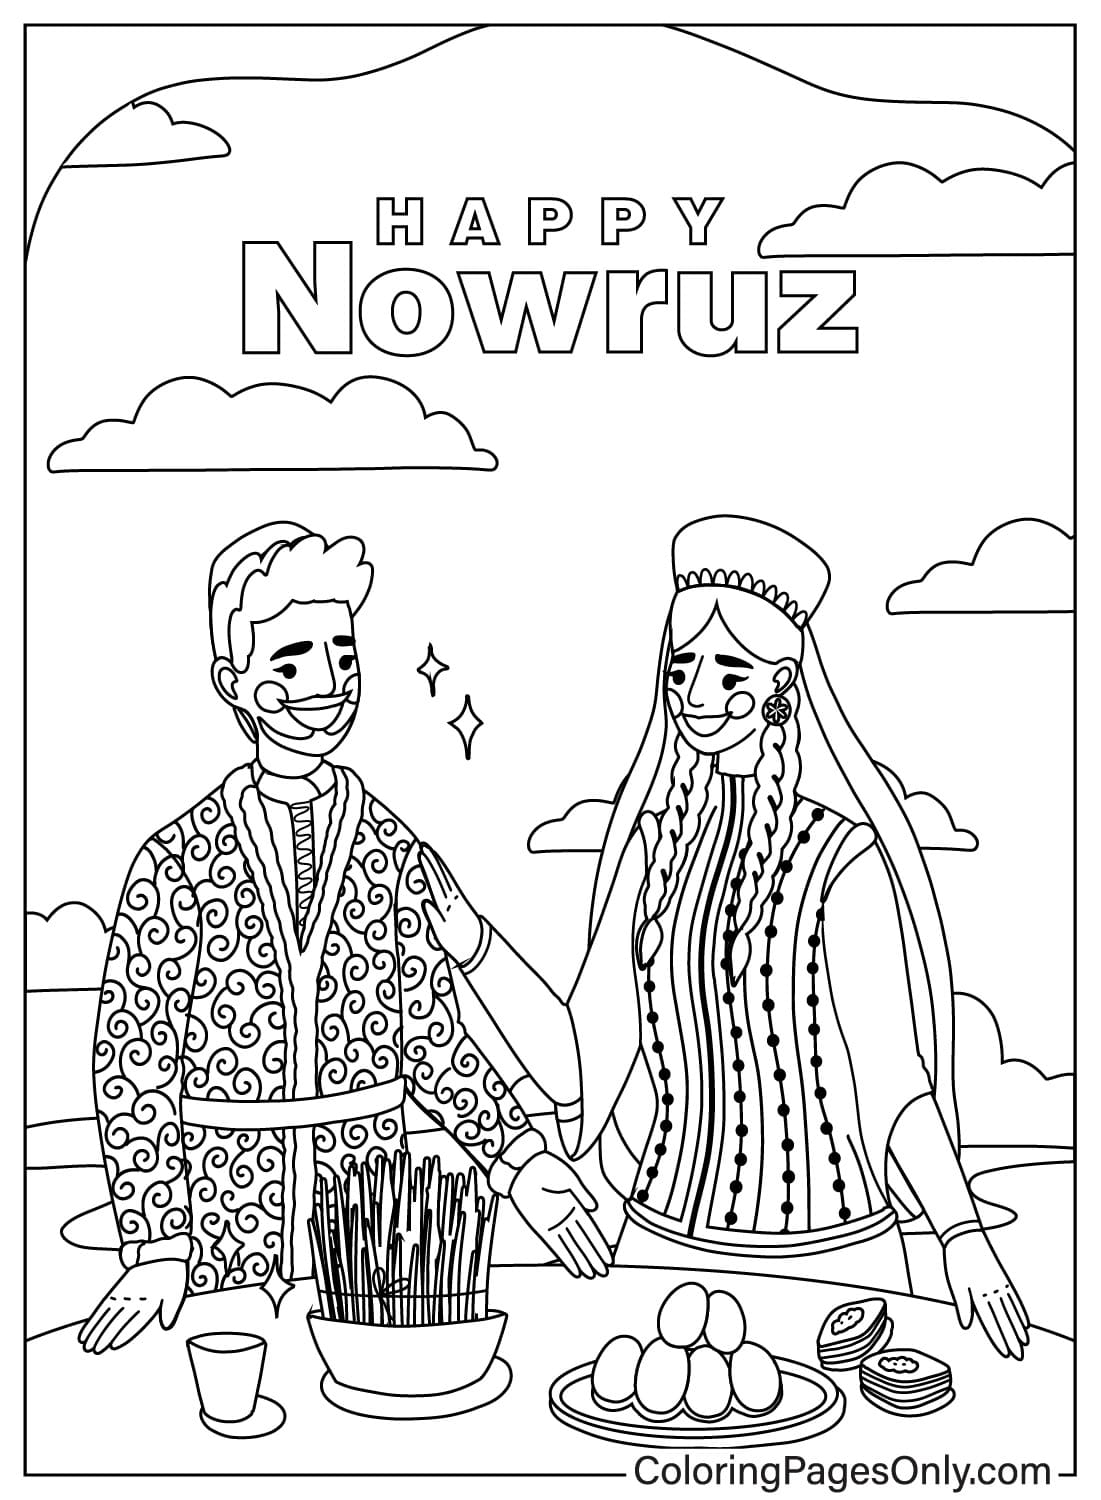 Folha para colorir desenhada Happy Nowruz do Dia Internacional de Nowruz